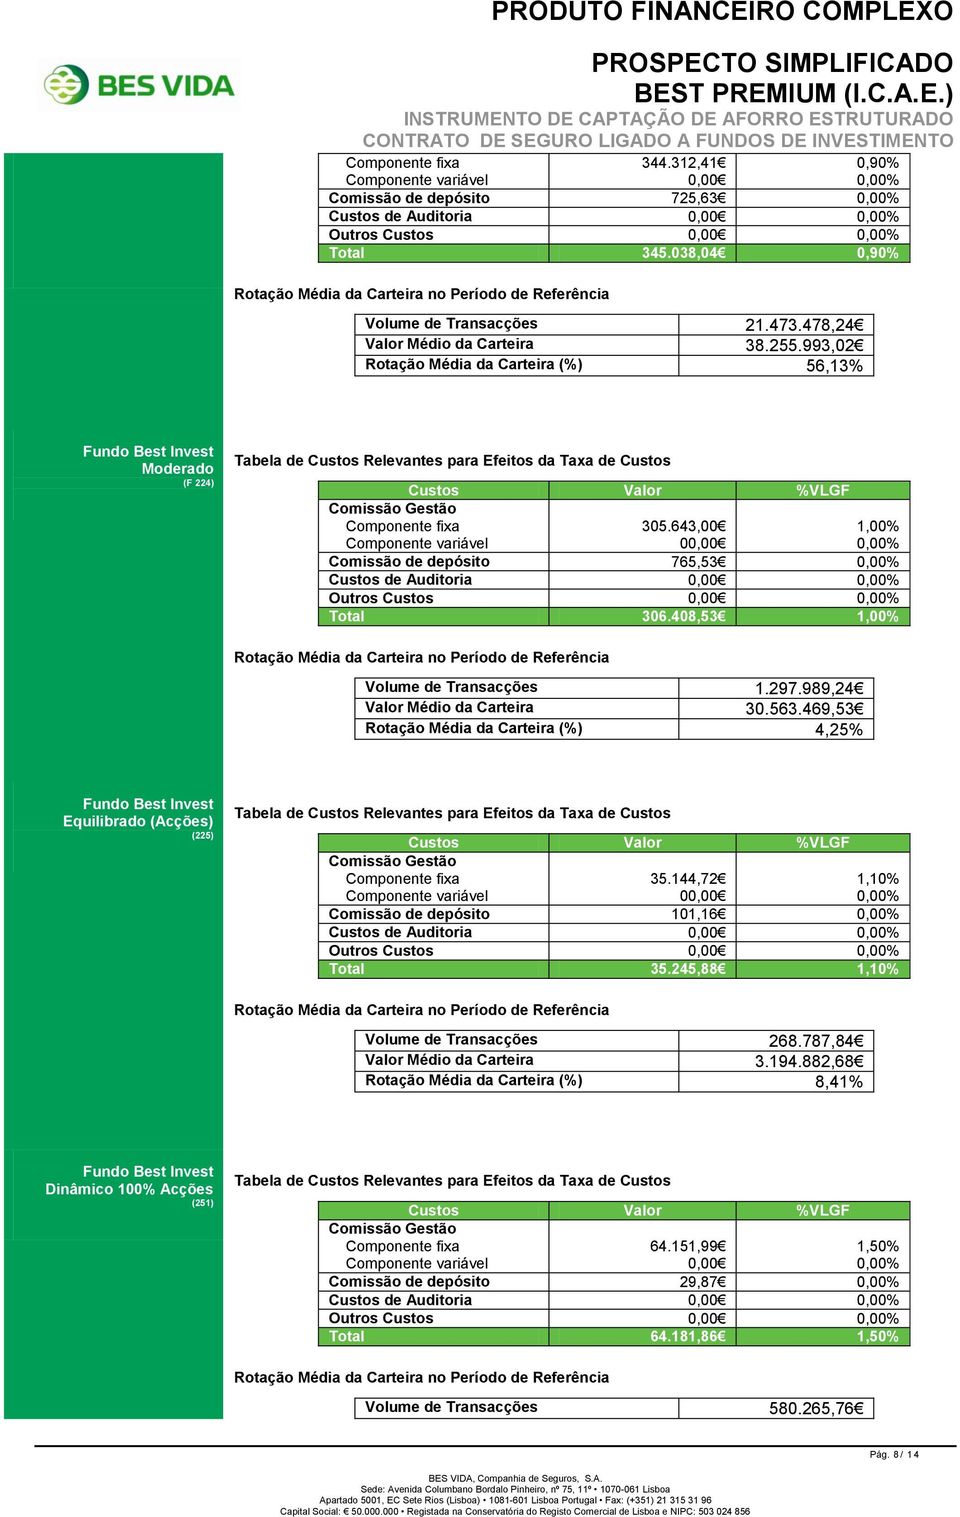 993,02 Rotação Média da Carteira (%) 56,13% Fundo Best Invest Moderado (F 224) Tabela de Custos Relevantes para Efeitos da Taxa de Custos Custos Valor %VLGF Comissão Gestão Componente fixa Componente